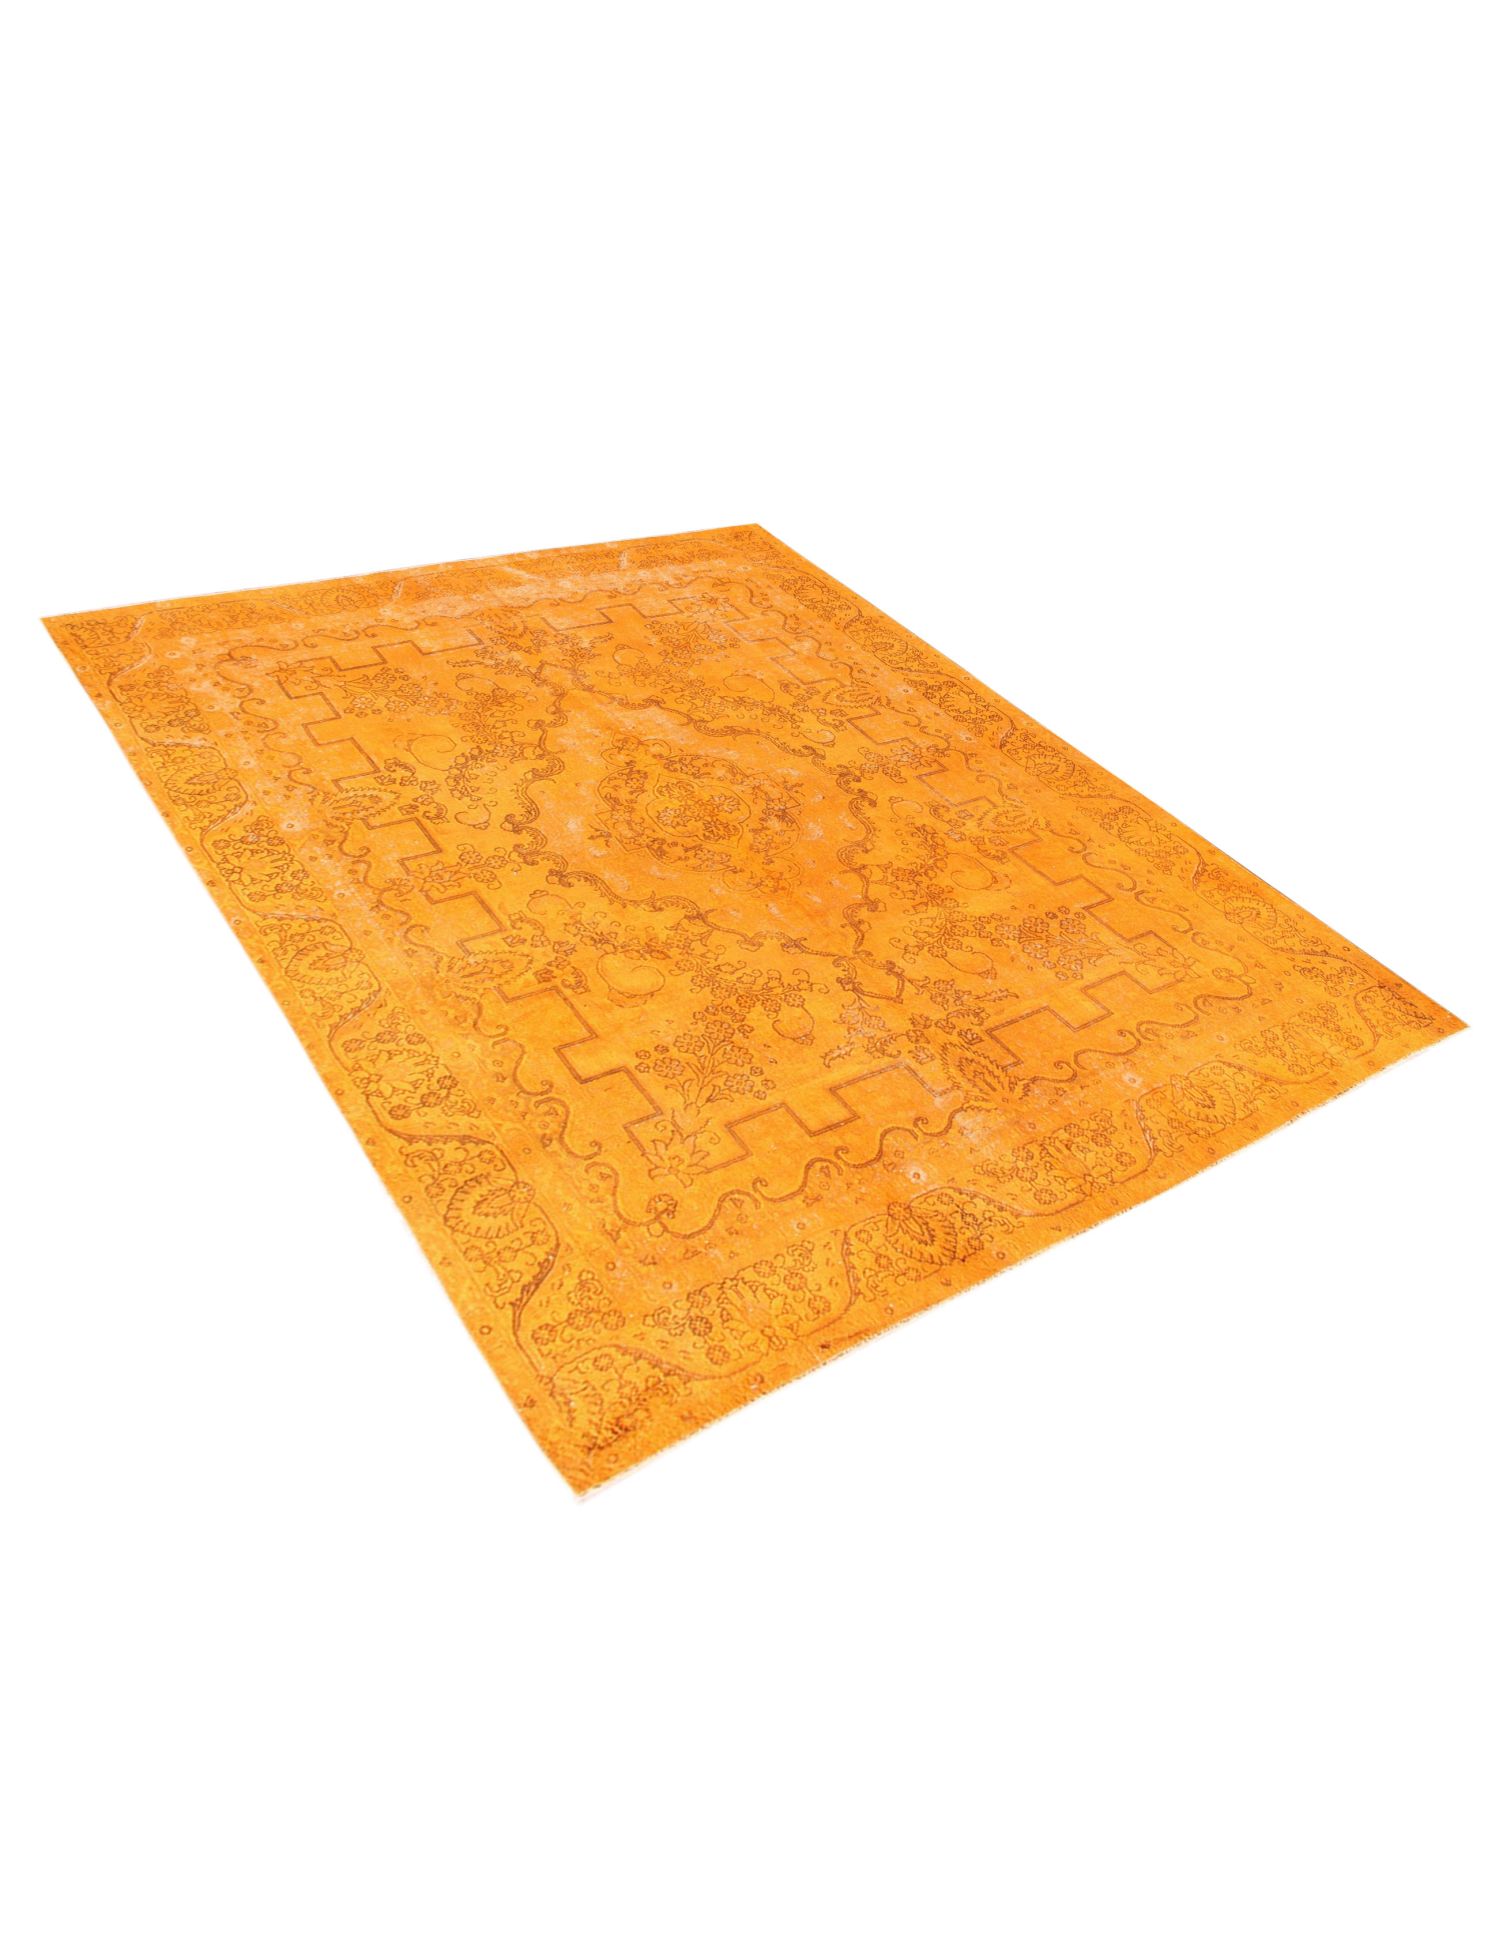 Περσικό Vintage Χαλί  Πορτοκαλί <br/>385 x 280 cm